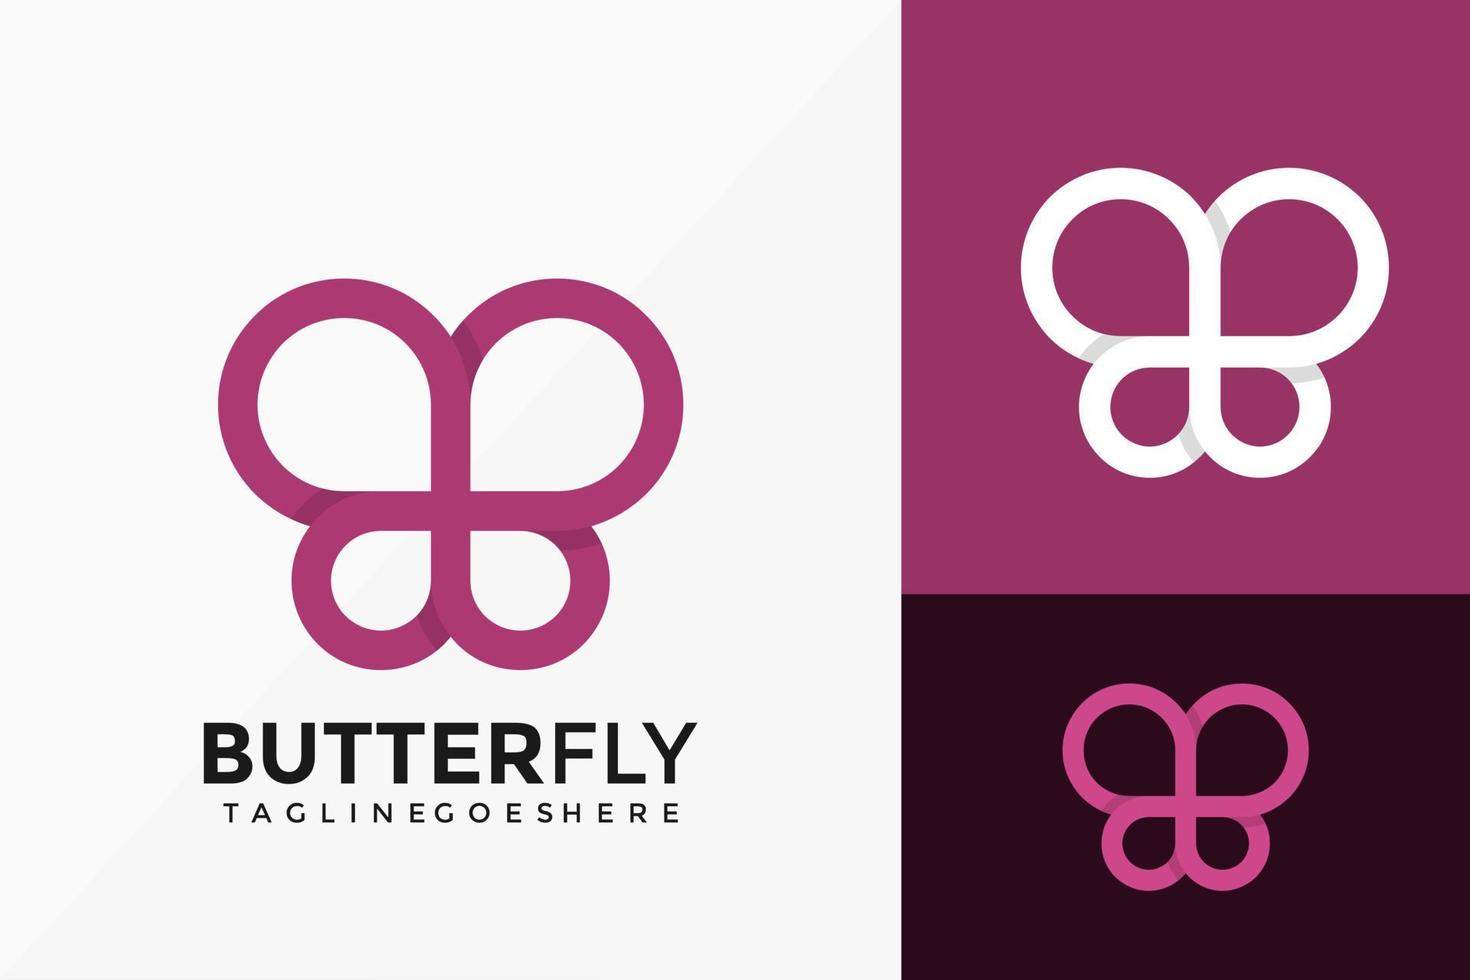 desenho de vetor de logotipo de borboleta de beleza. emblema abstrato, conceito de projetos, logotipos, elemento de logotipo para modelo.